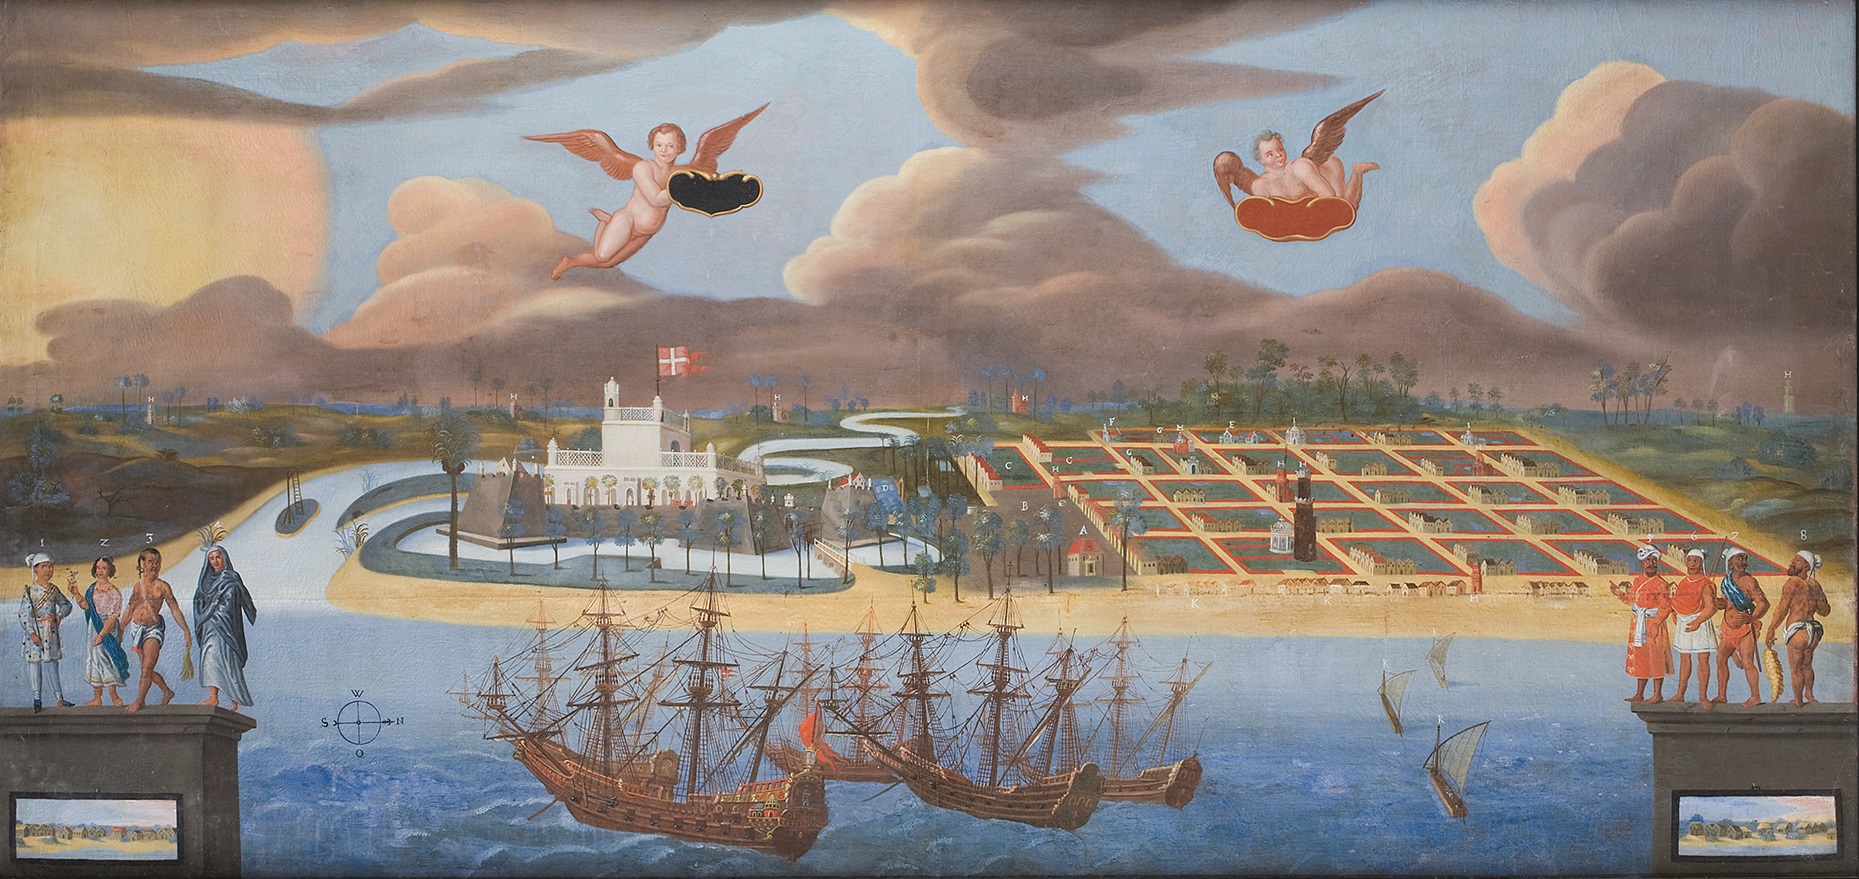 Maleri af Tranquebar 1650